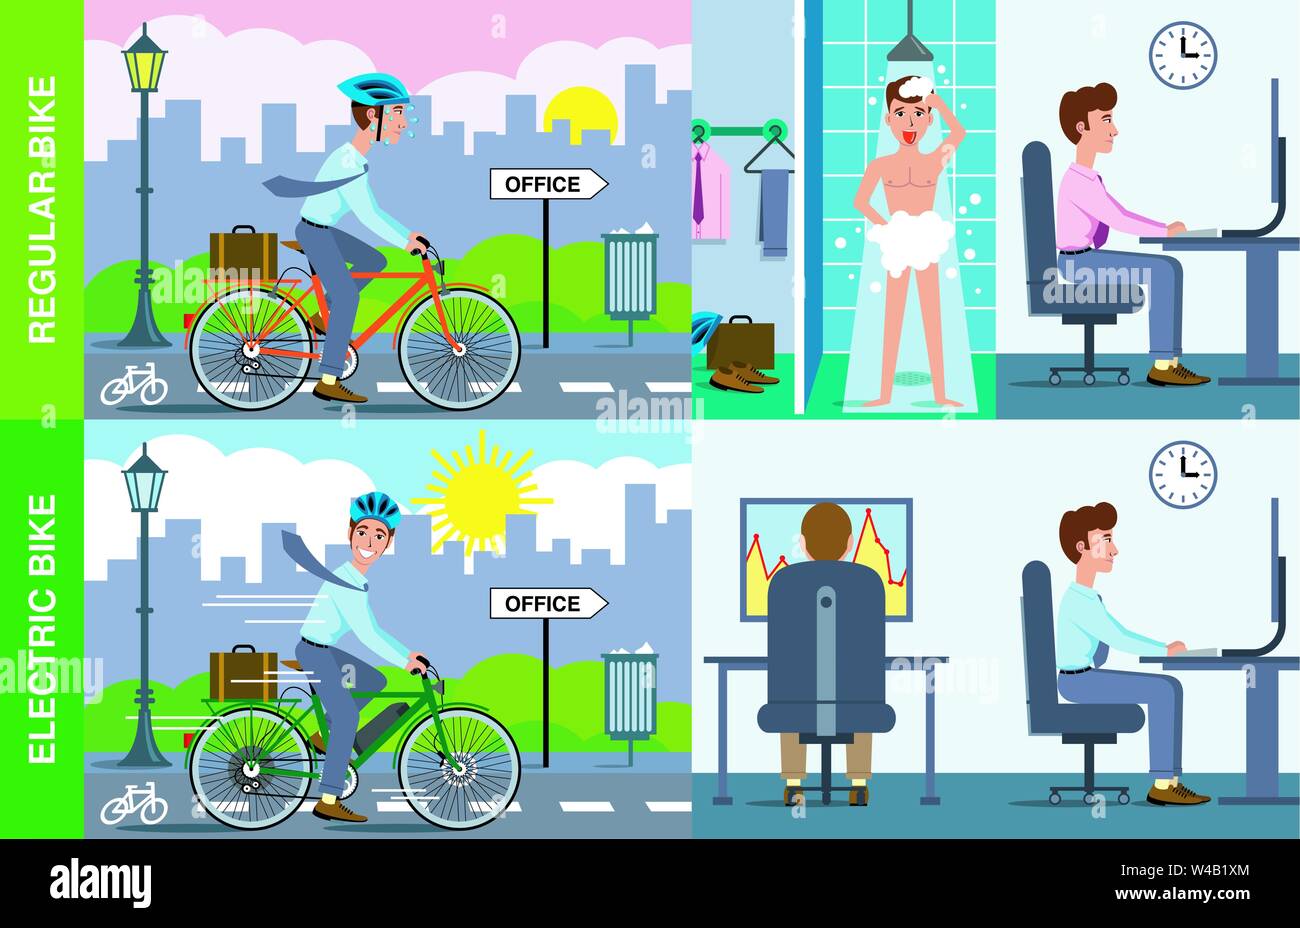 Illustrazione dell'uomo usando una normale bicicletta per lavoro, doccia e seduto alla scrivania in ufficio contro uomo con bicicletta elettrica arriva in ufficio pronto a lavorare. Illustrazione Vettoriale